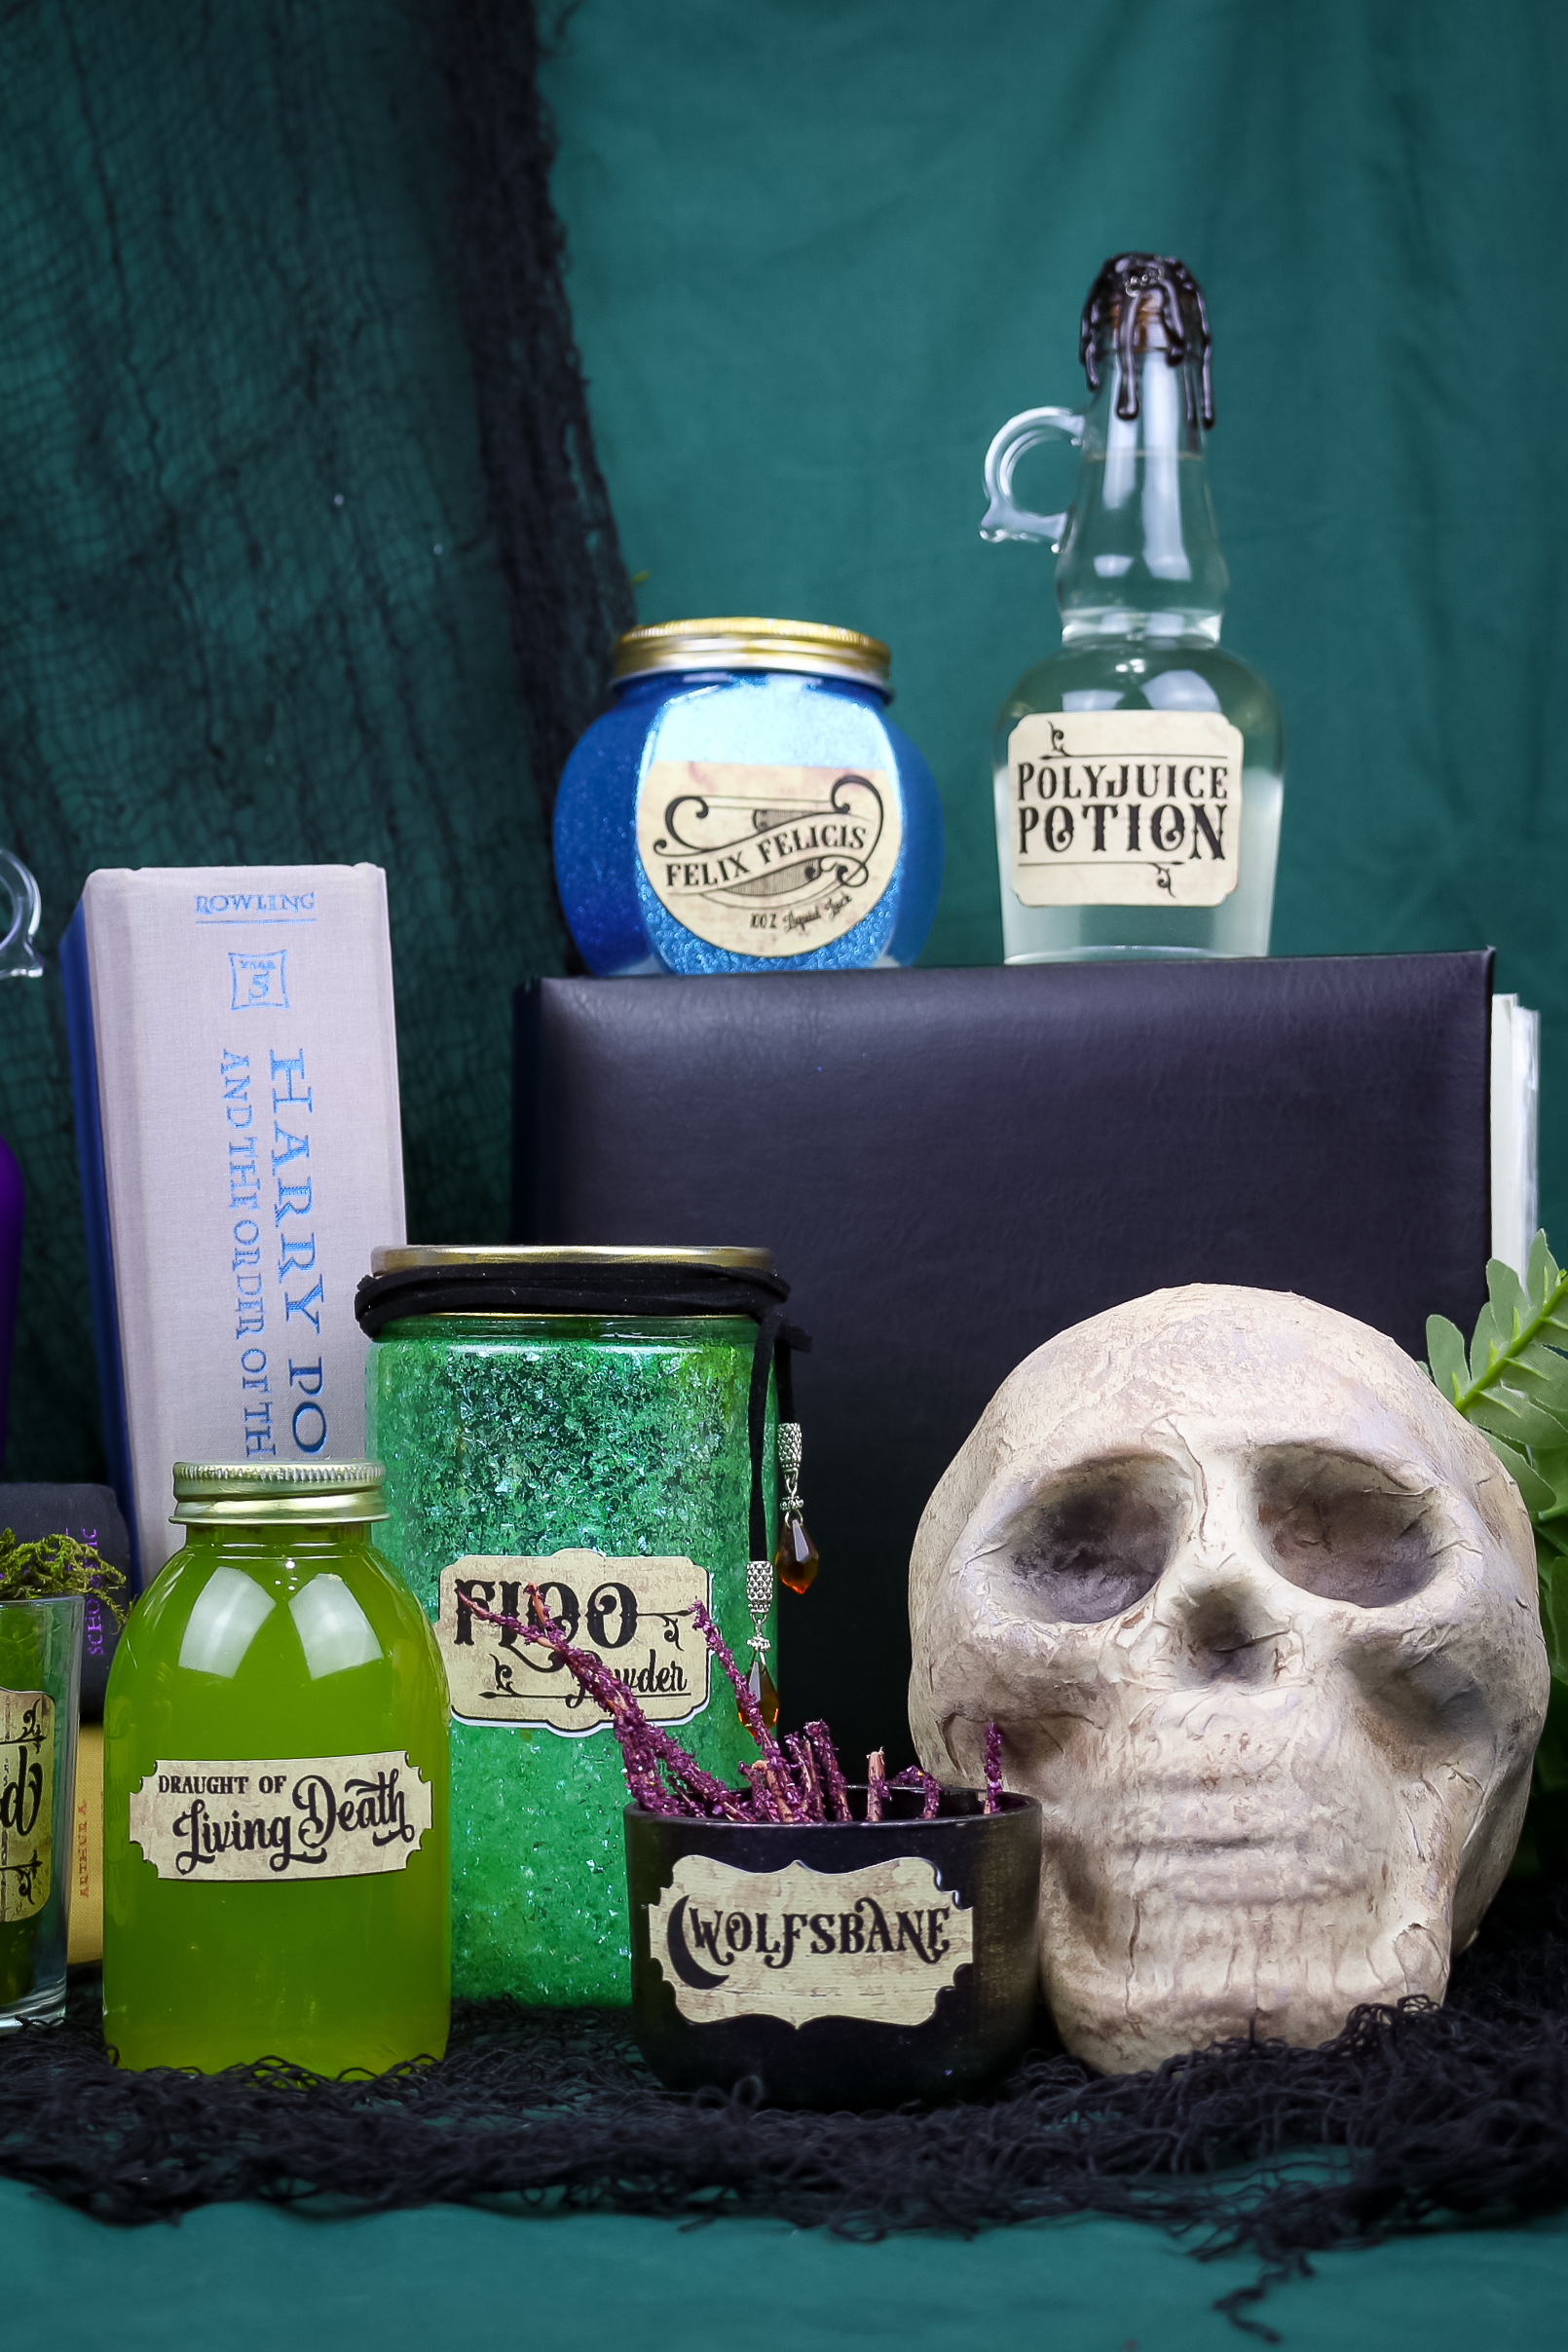 skull, books, and Harry Potter potion bottles